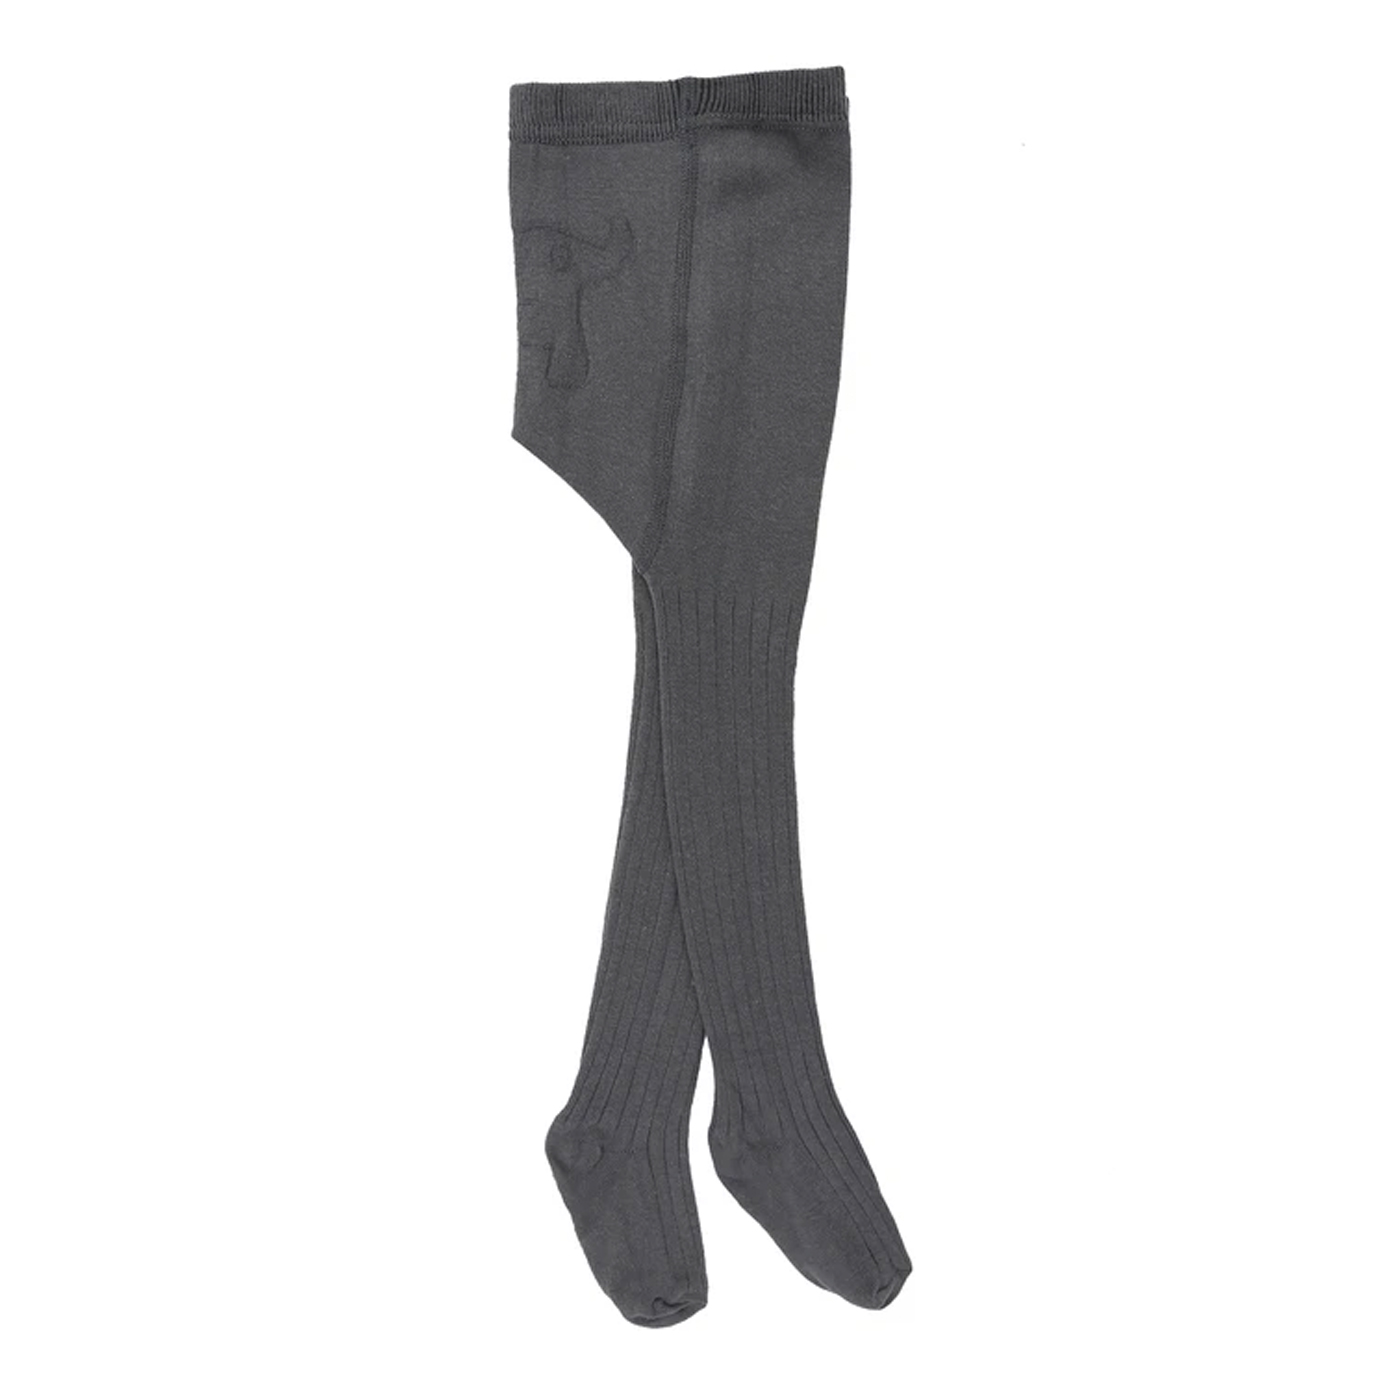  Baboo Külotlu Çorap  | Gri